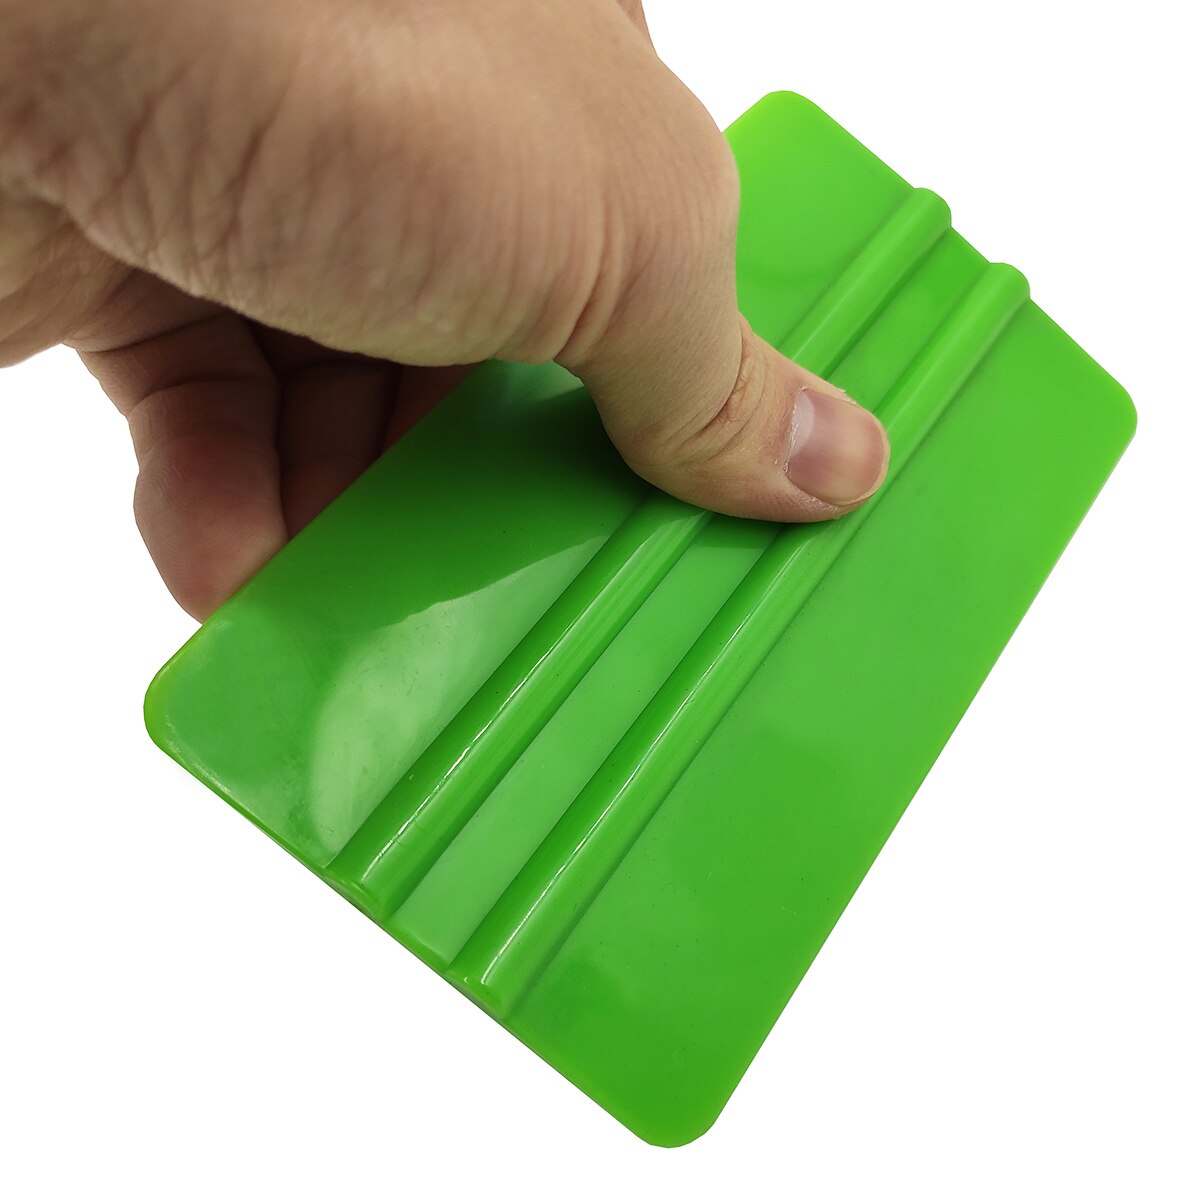 Vinylfilmoverføringsbillede plastskraber bilvindue indpakning 3m grøn gummiskraber toning klistermærke styling hånd applikator rengøringsværktøj  a75